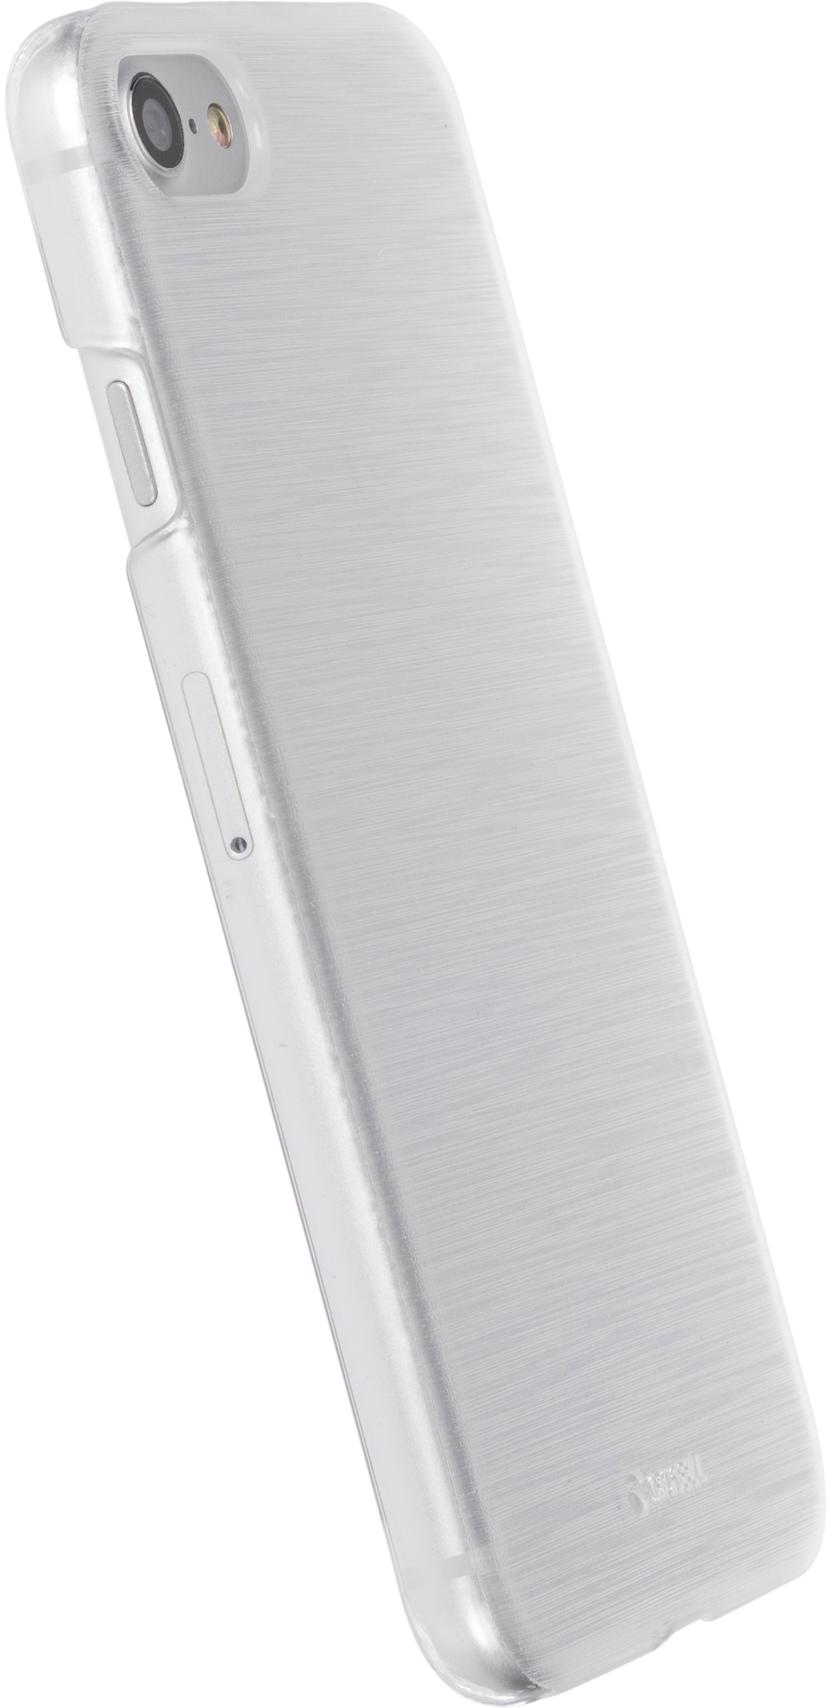 Krusell Boden takakansi matkapuhelimelle iPhone 7 Läpikuultava valkoinen